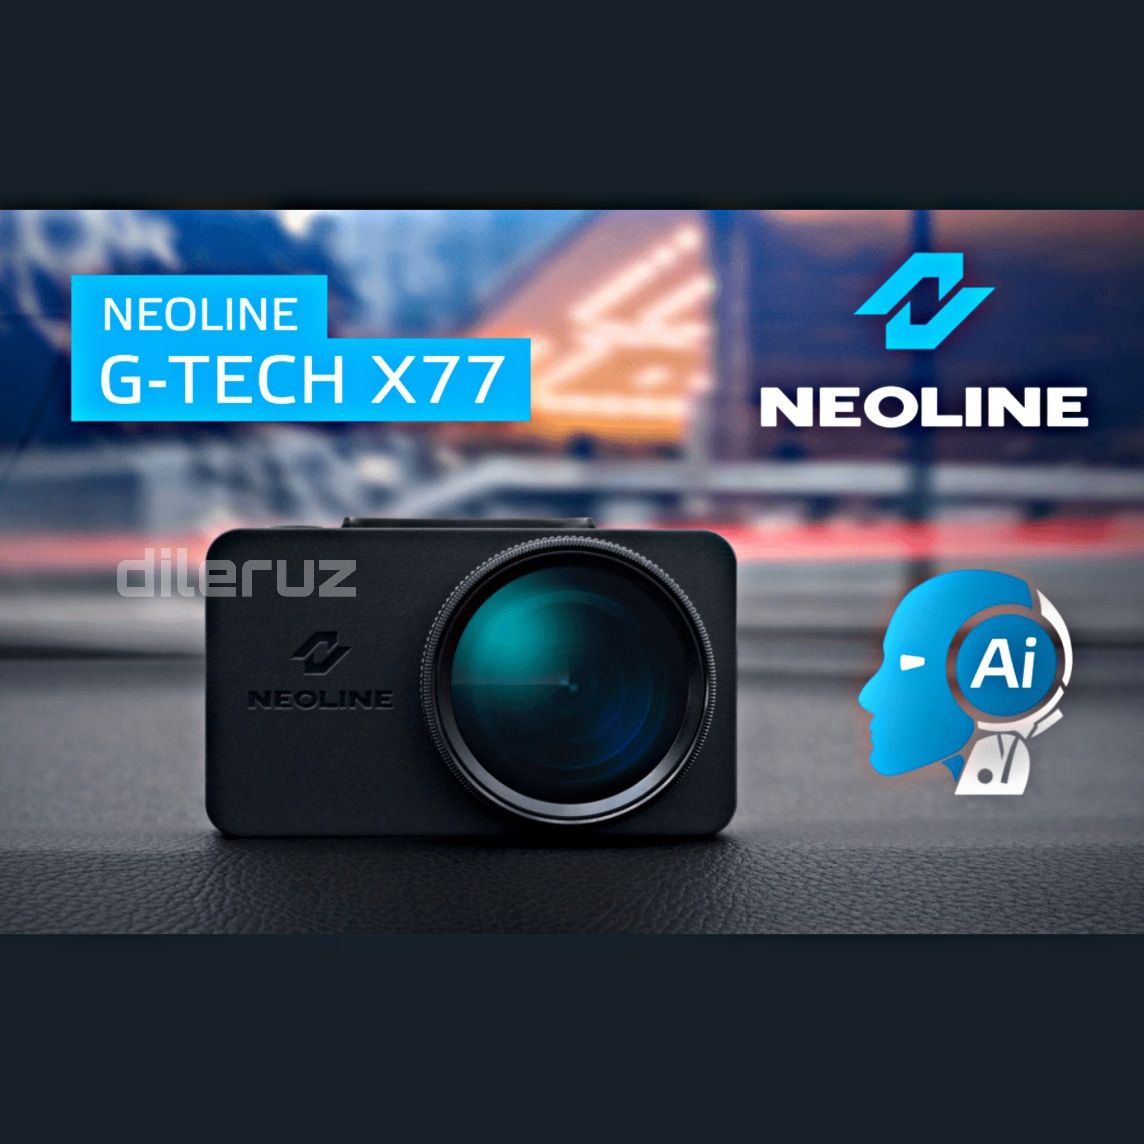 Neoline x77 New "Видеорегистратор с гарантиейна 1 год" Регистратор